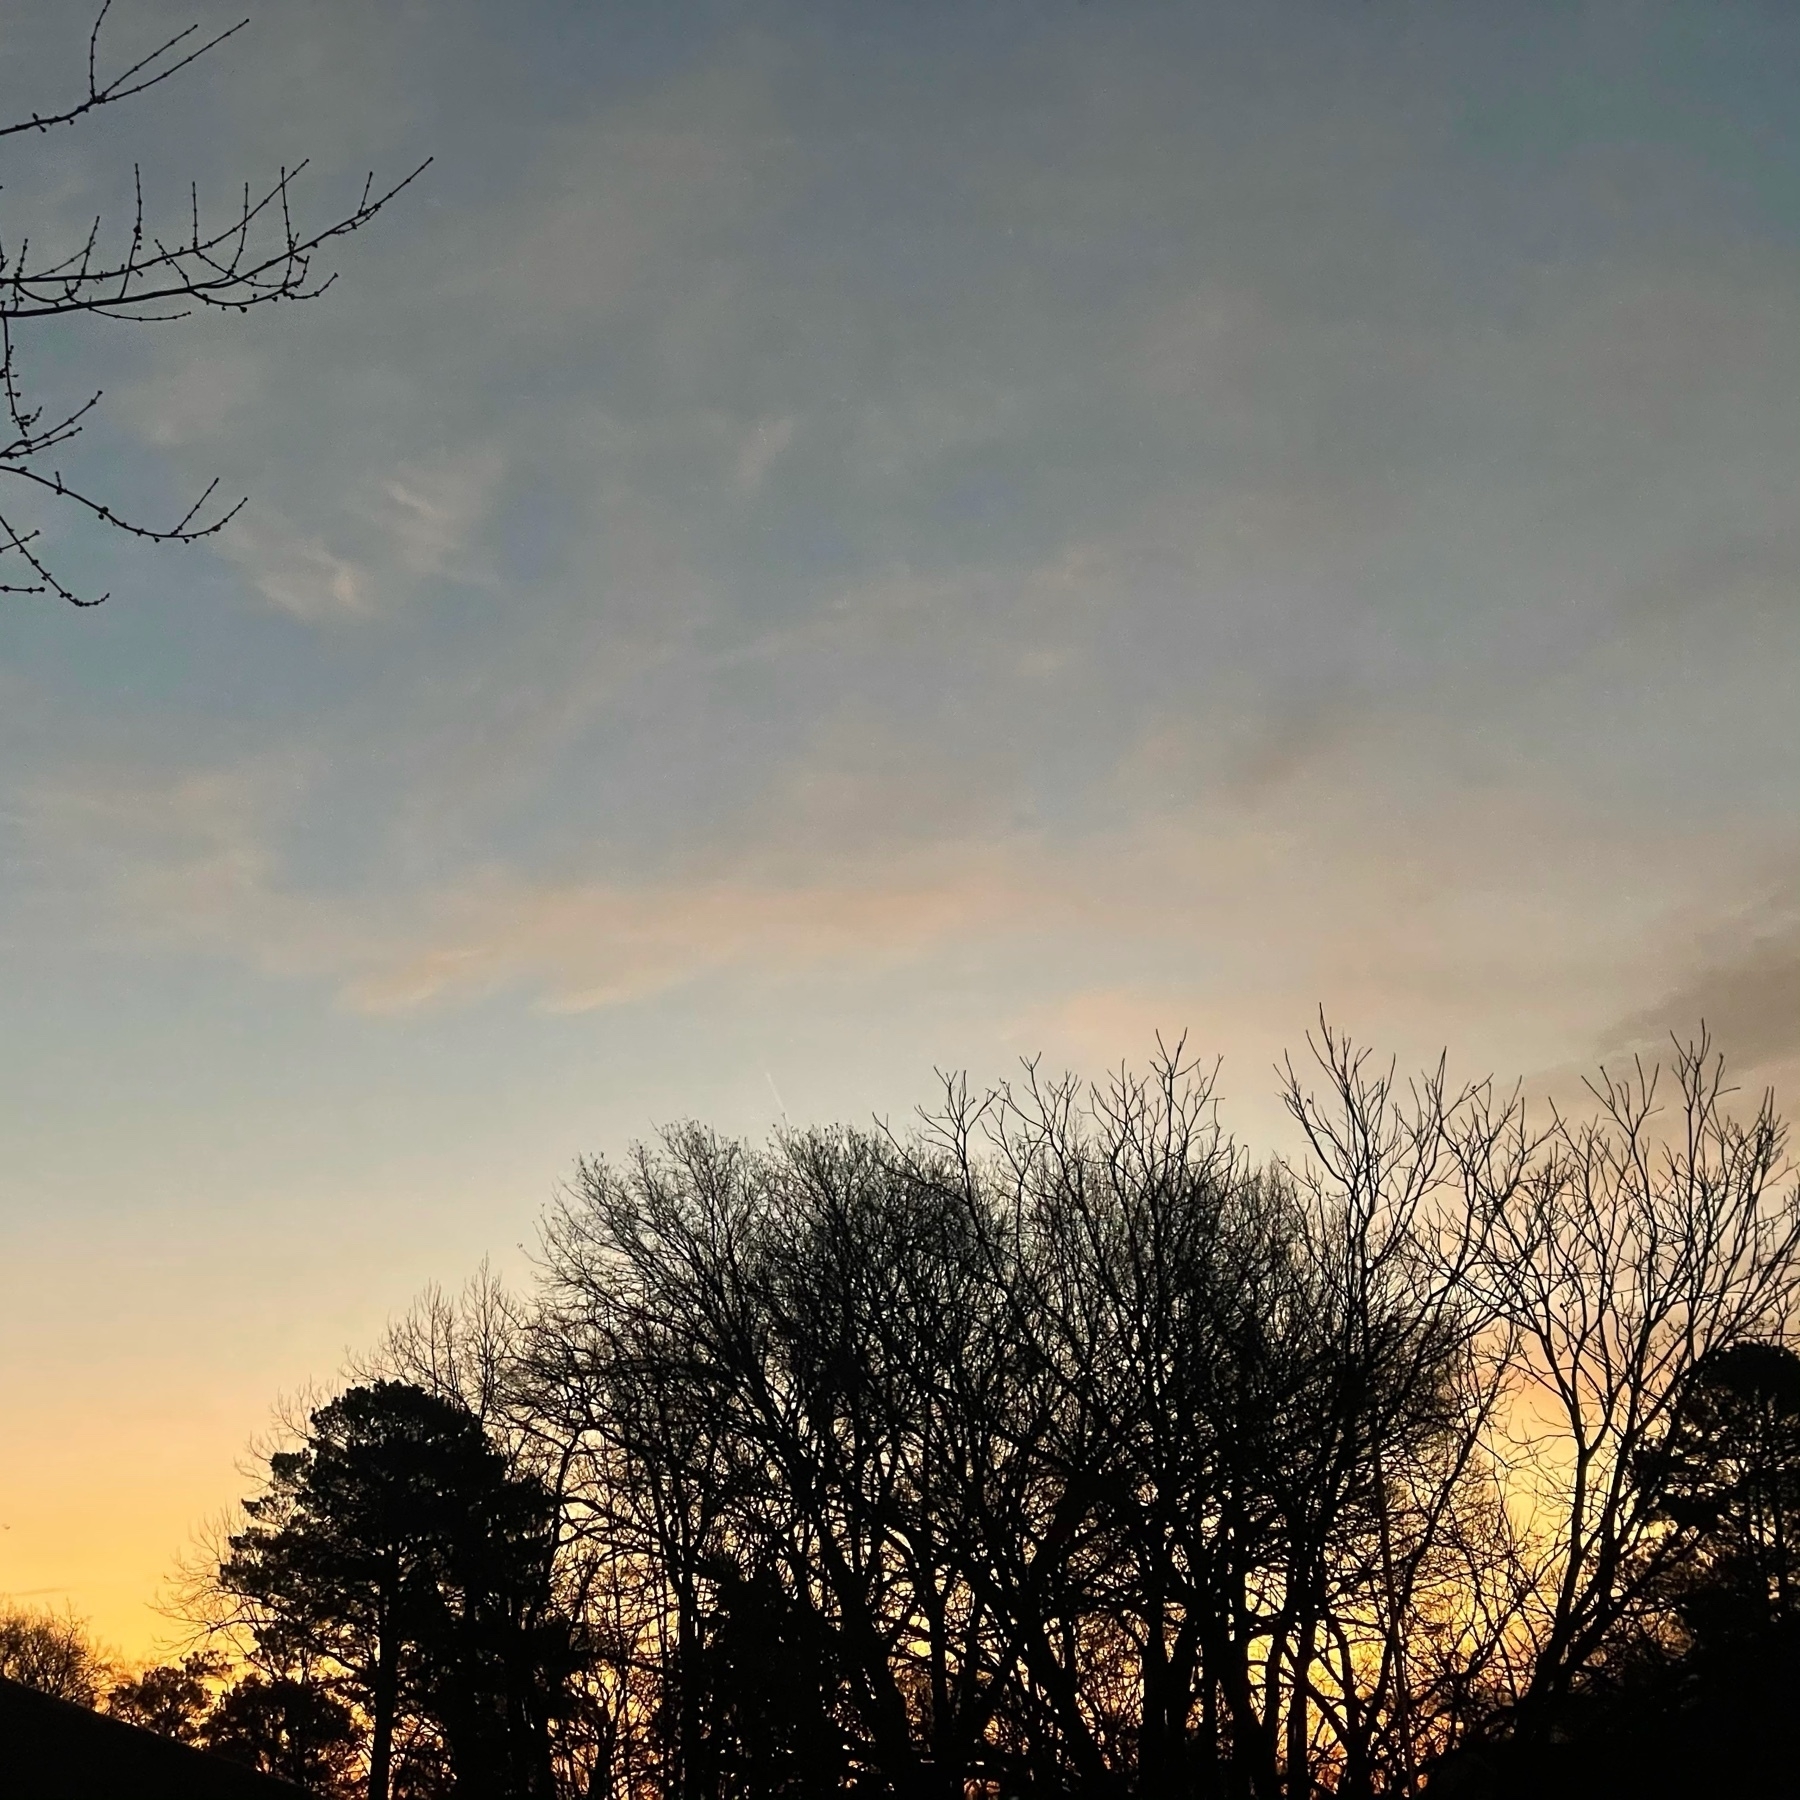 Early morning sky